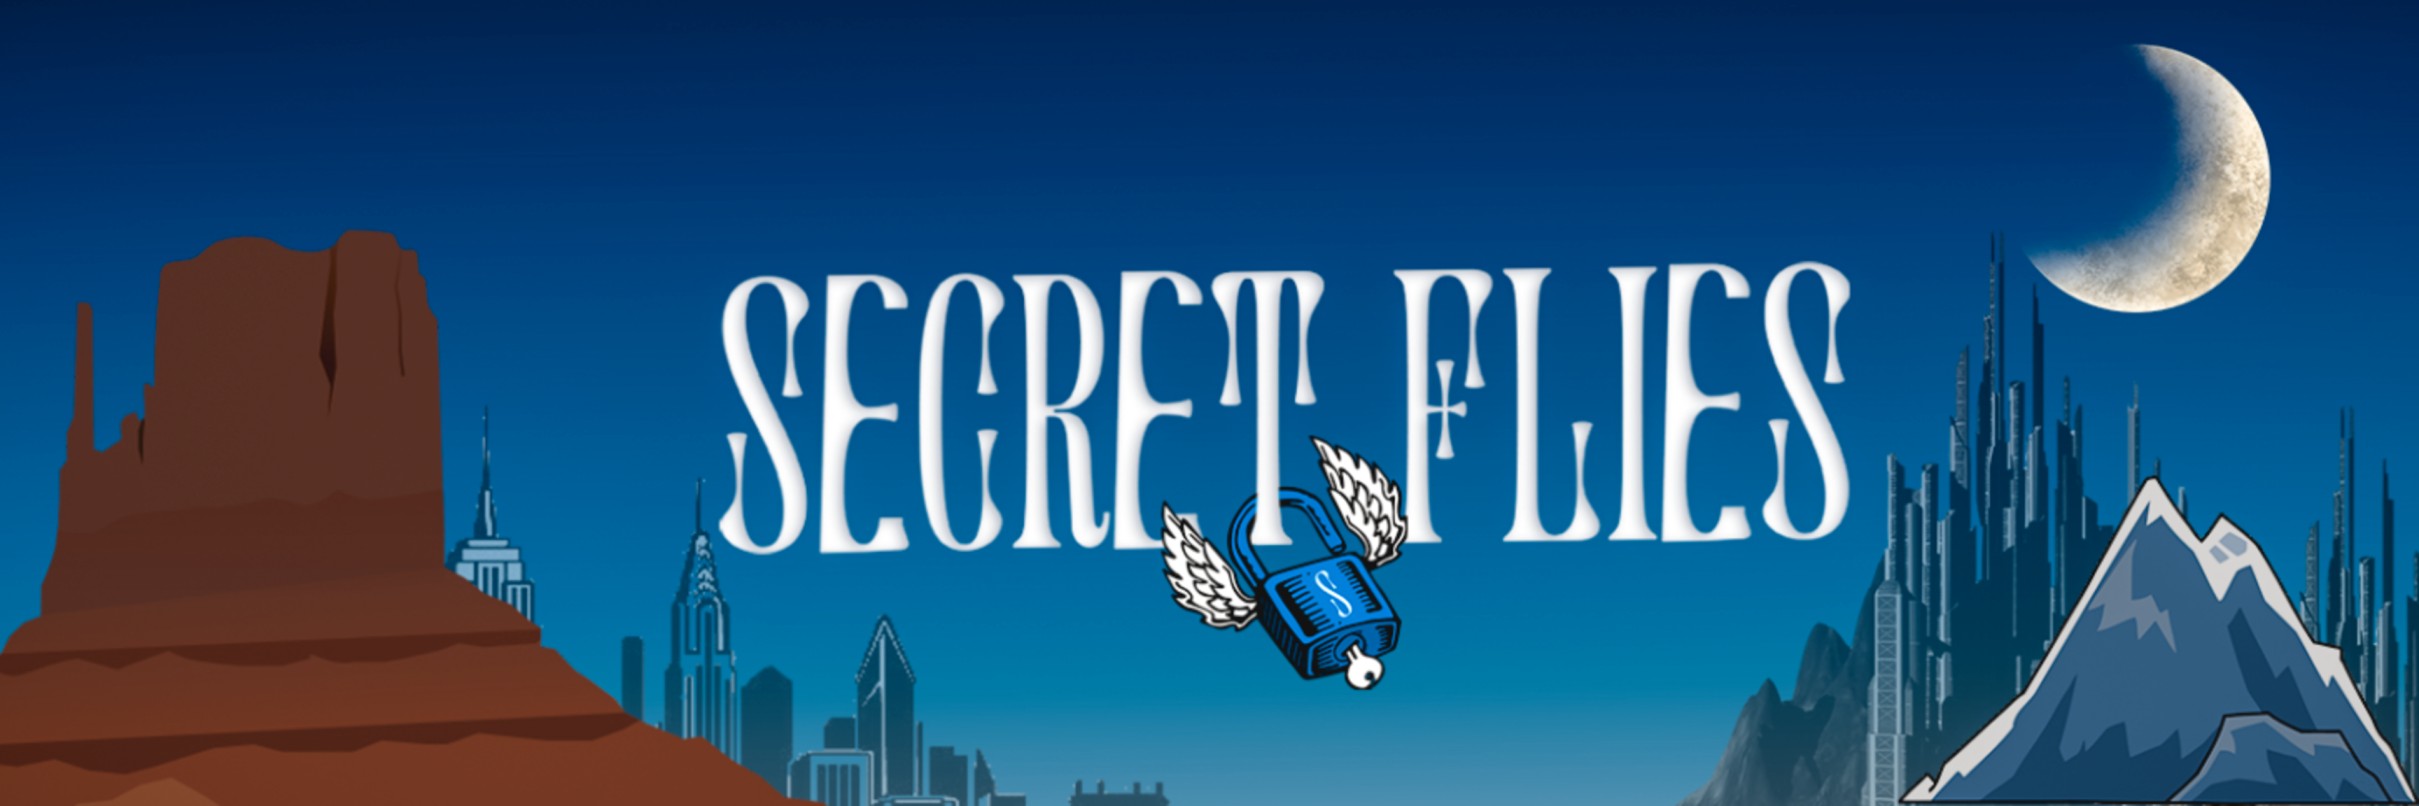 SecretFlies banner